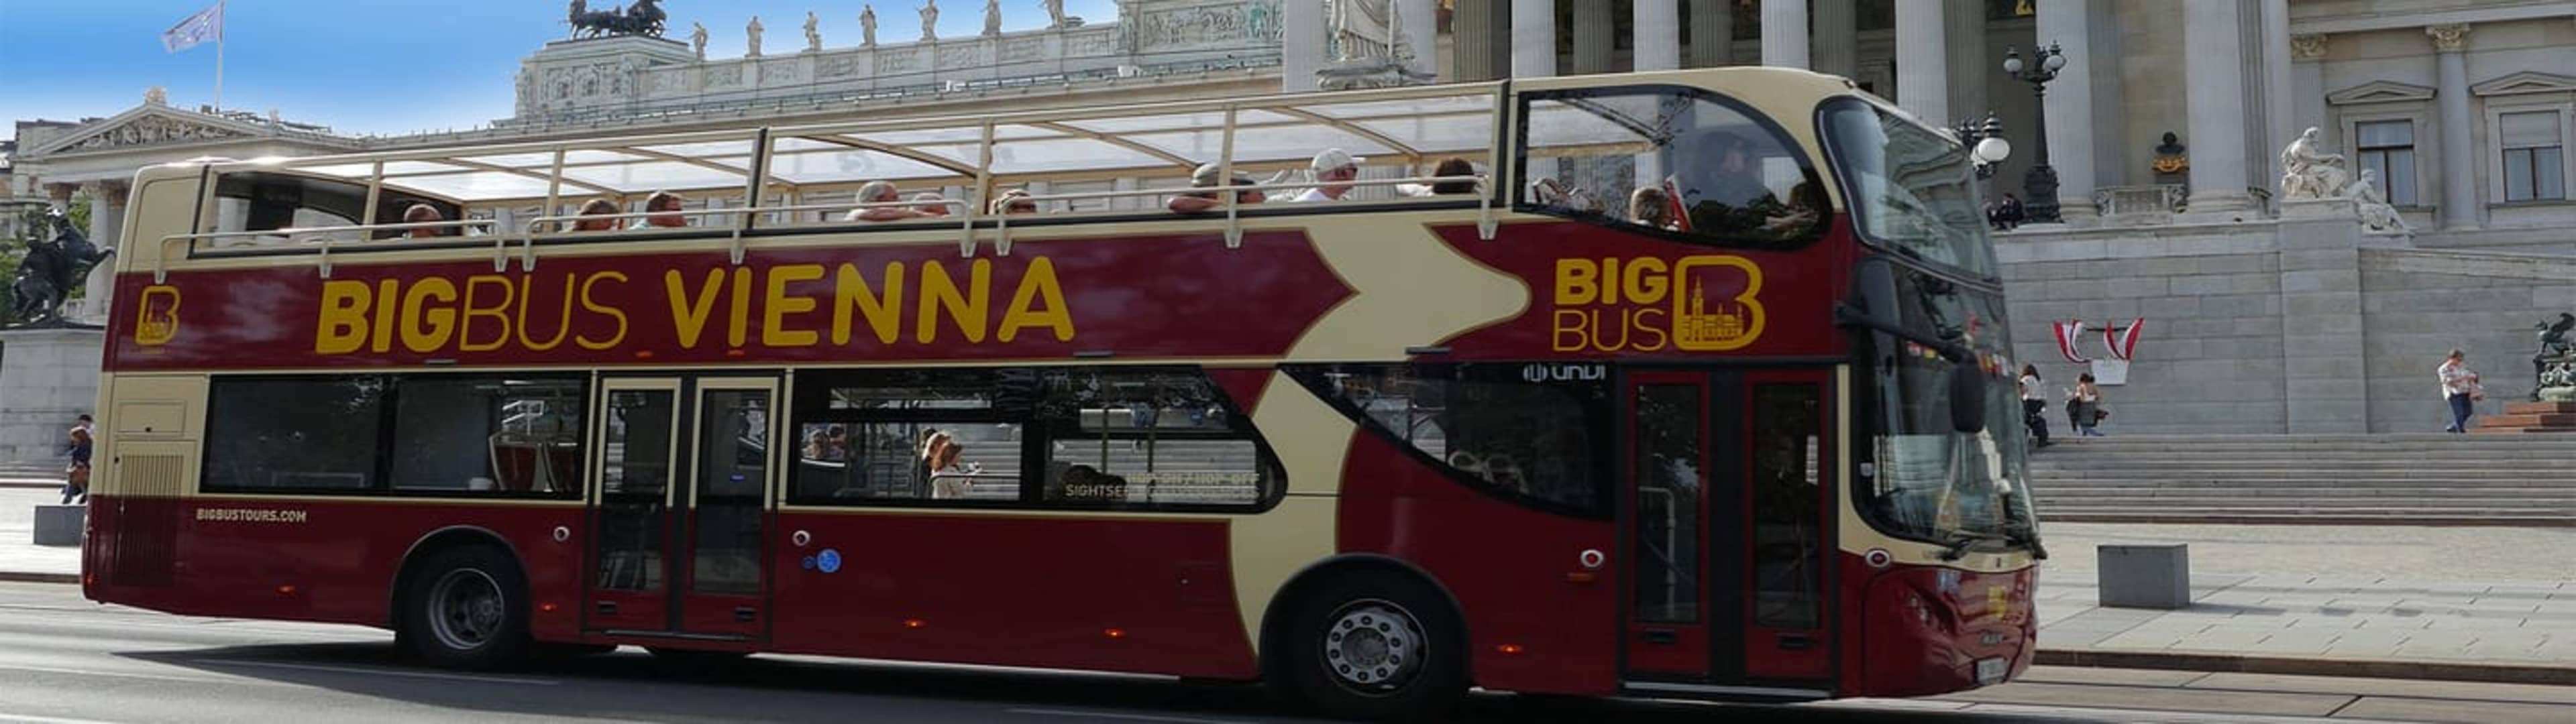 Big bus Vienna